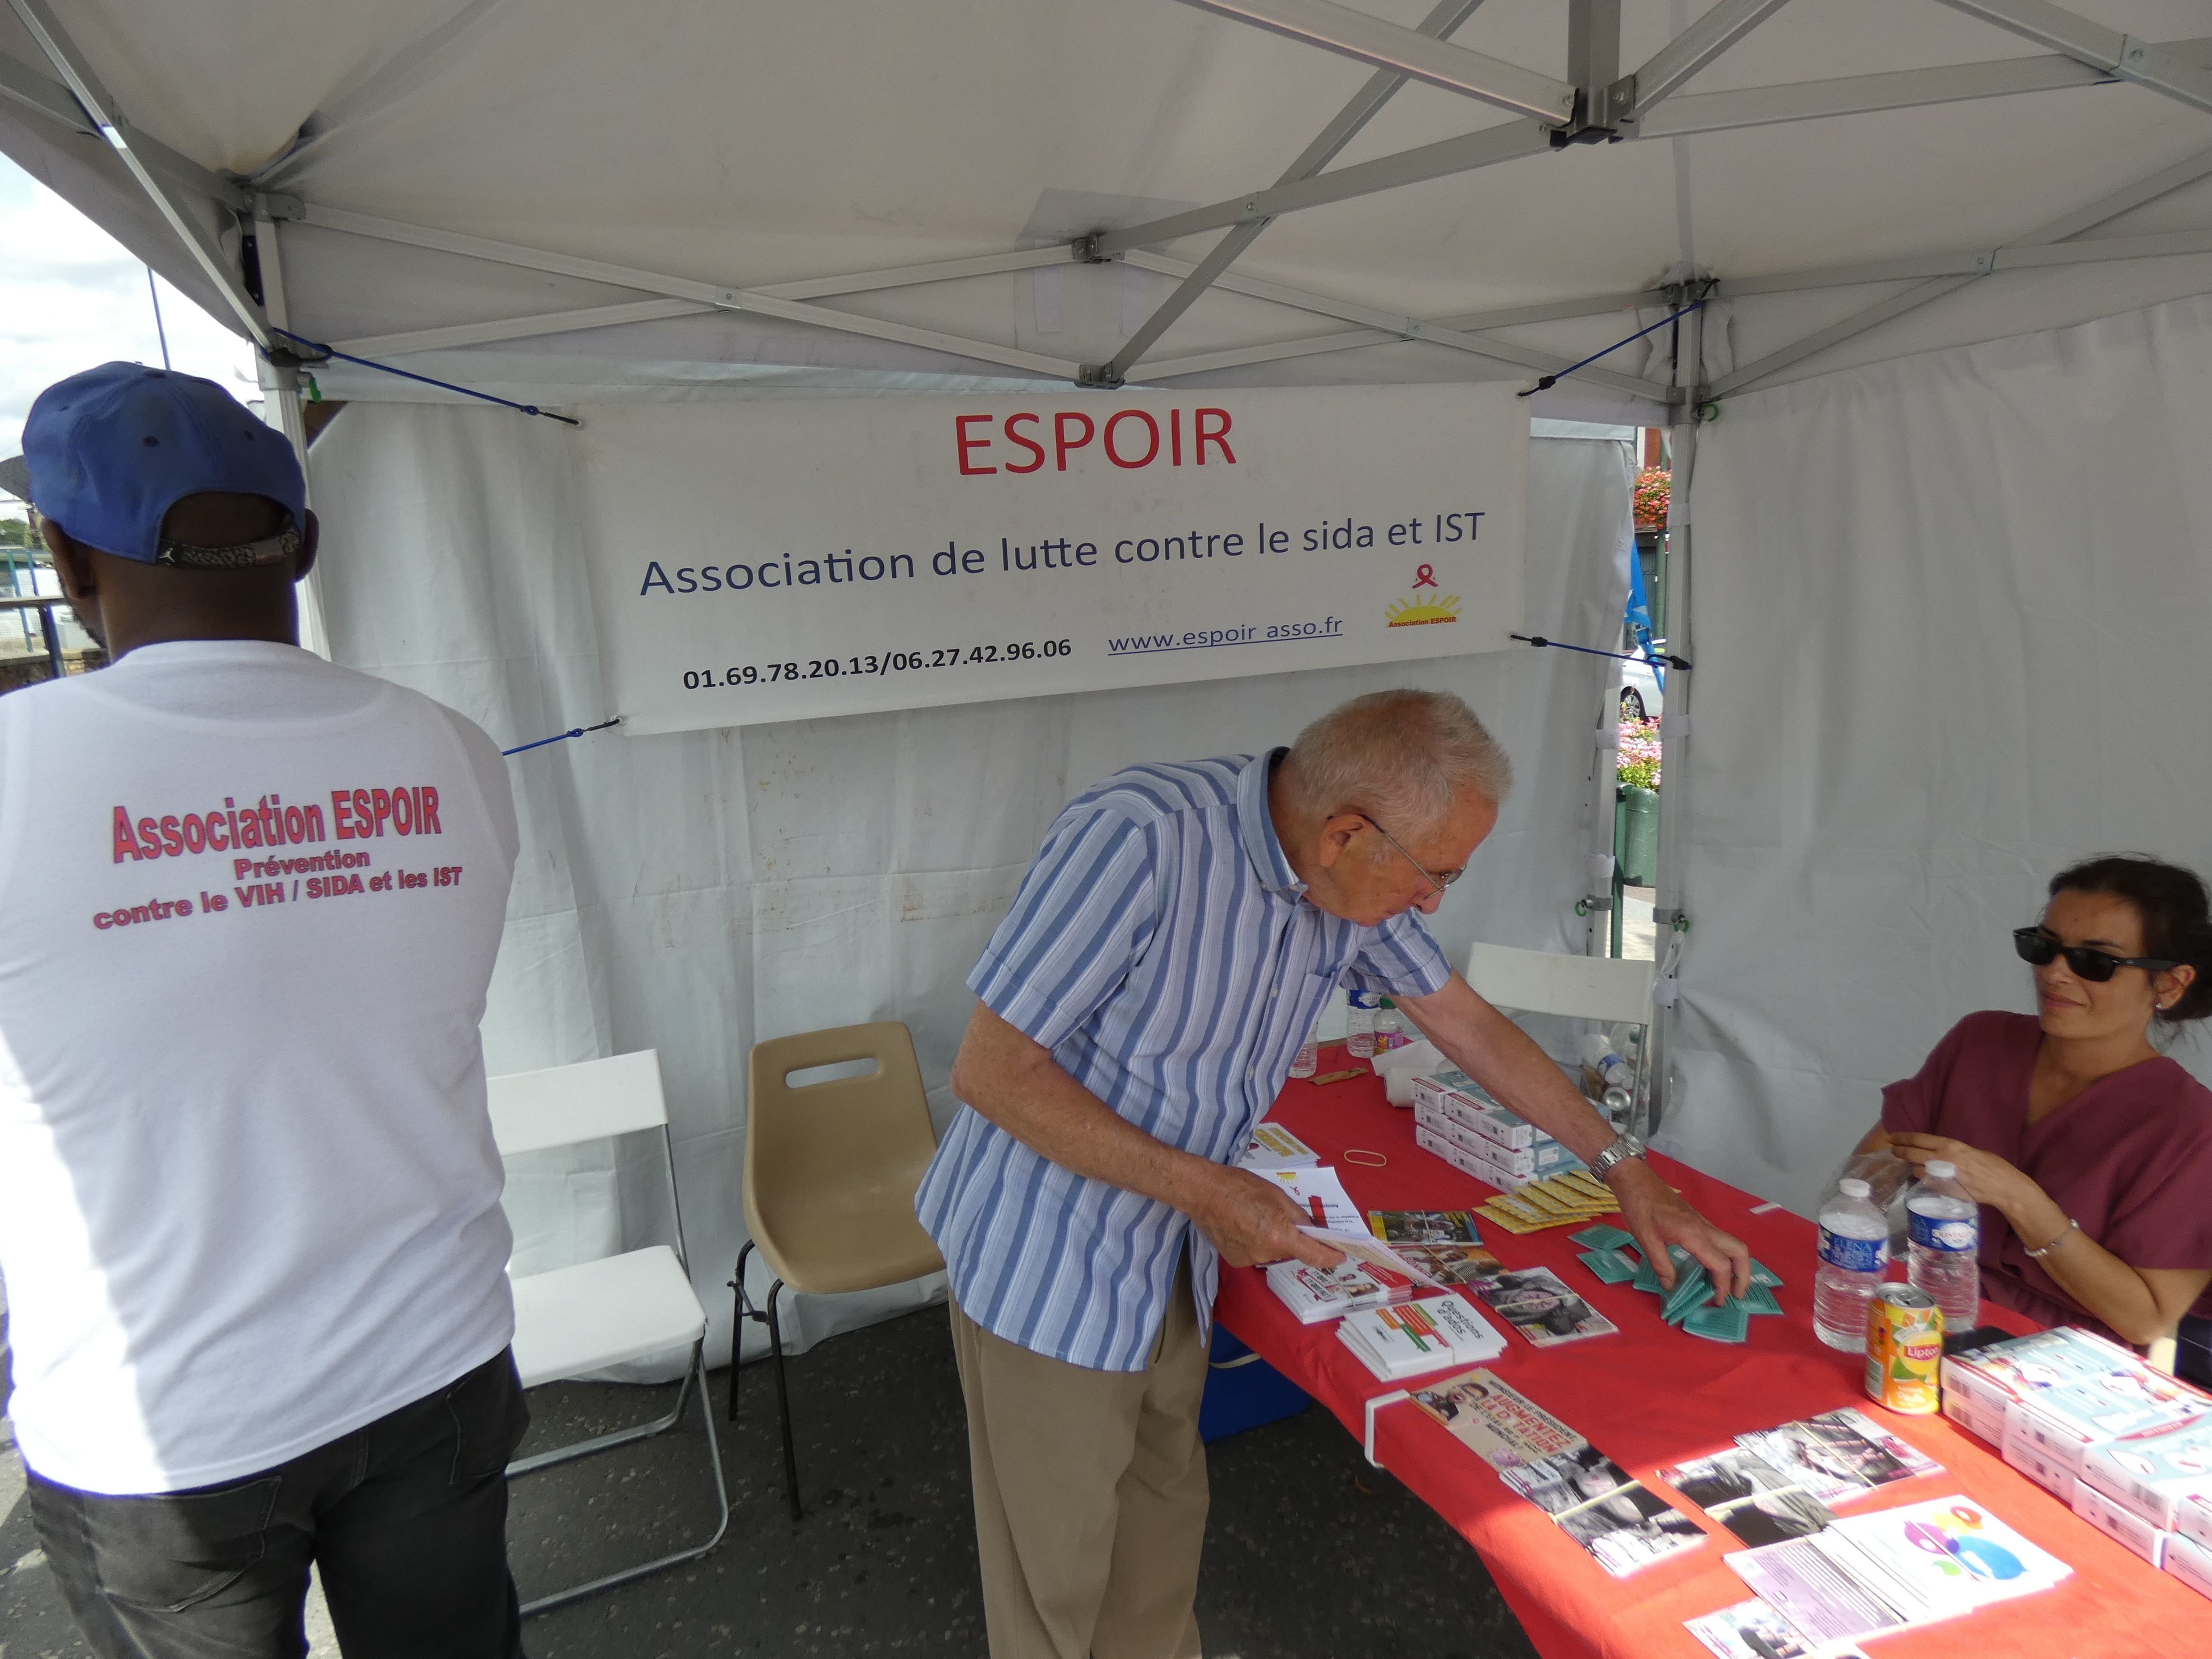 Etampes, le 25 juillet. L'association Espoir organise régulièrement des dépistages gratuits et anonymes de VIH et hépatite B et C comme ici devant la gare d'Etampes. LP/Cécile Chevallier